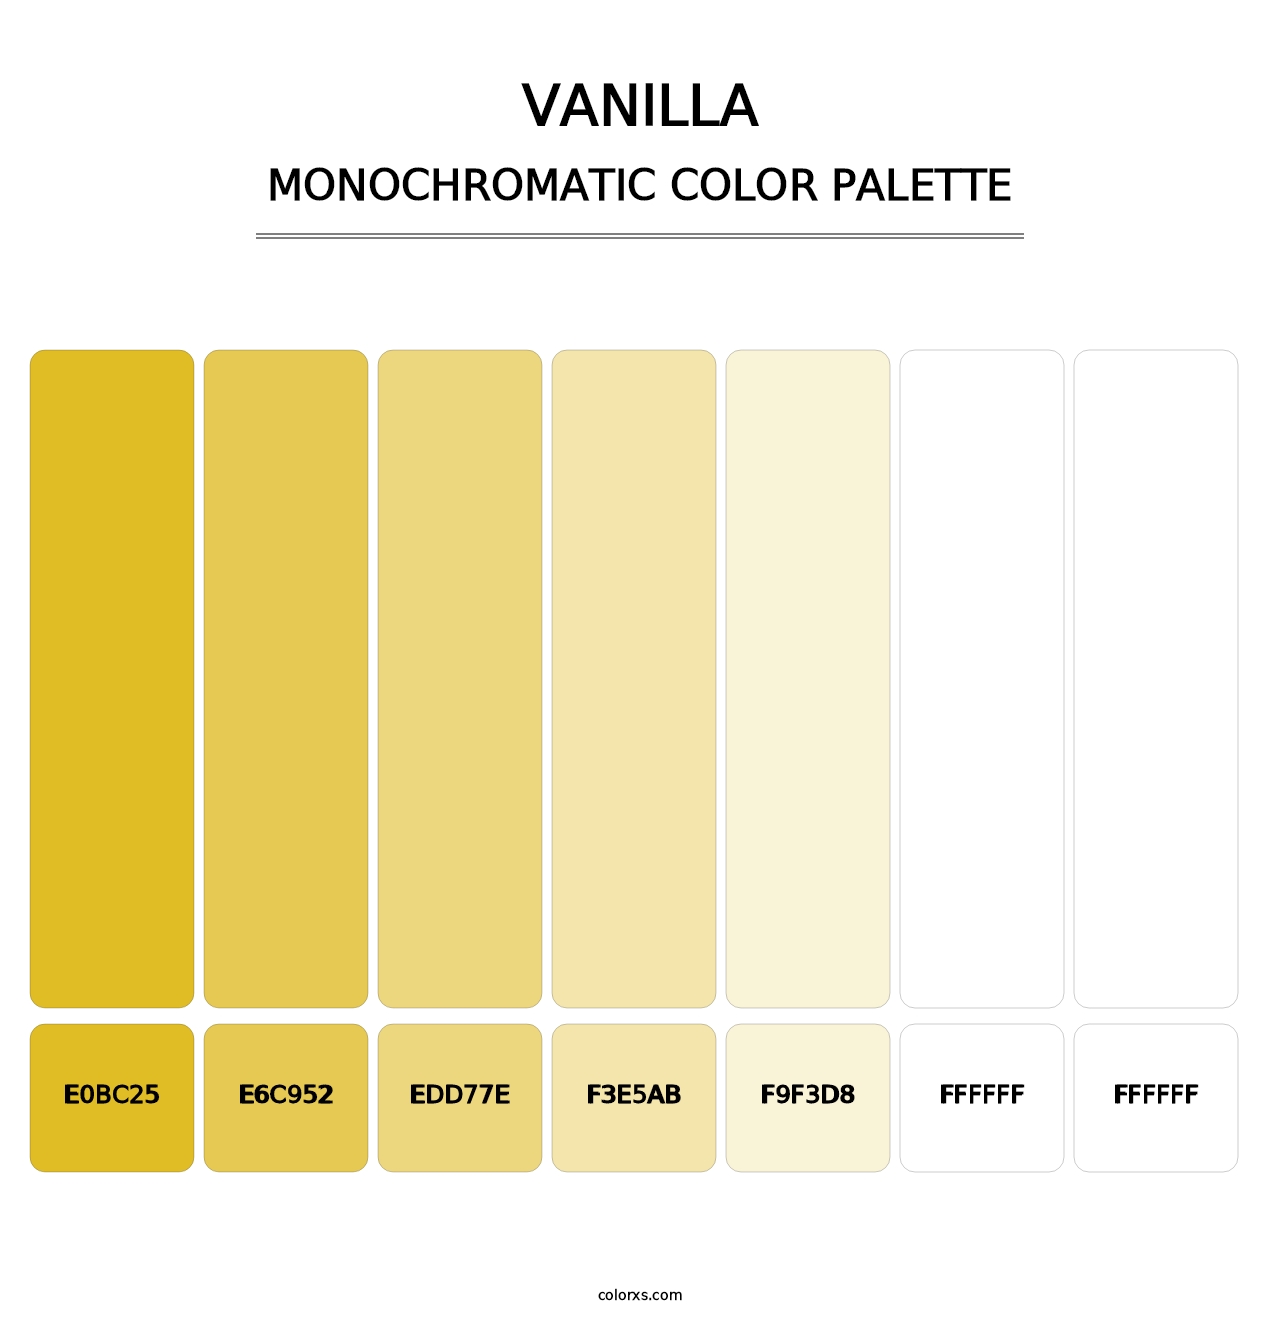 Vanilla - Monochromatic Color Palette